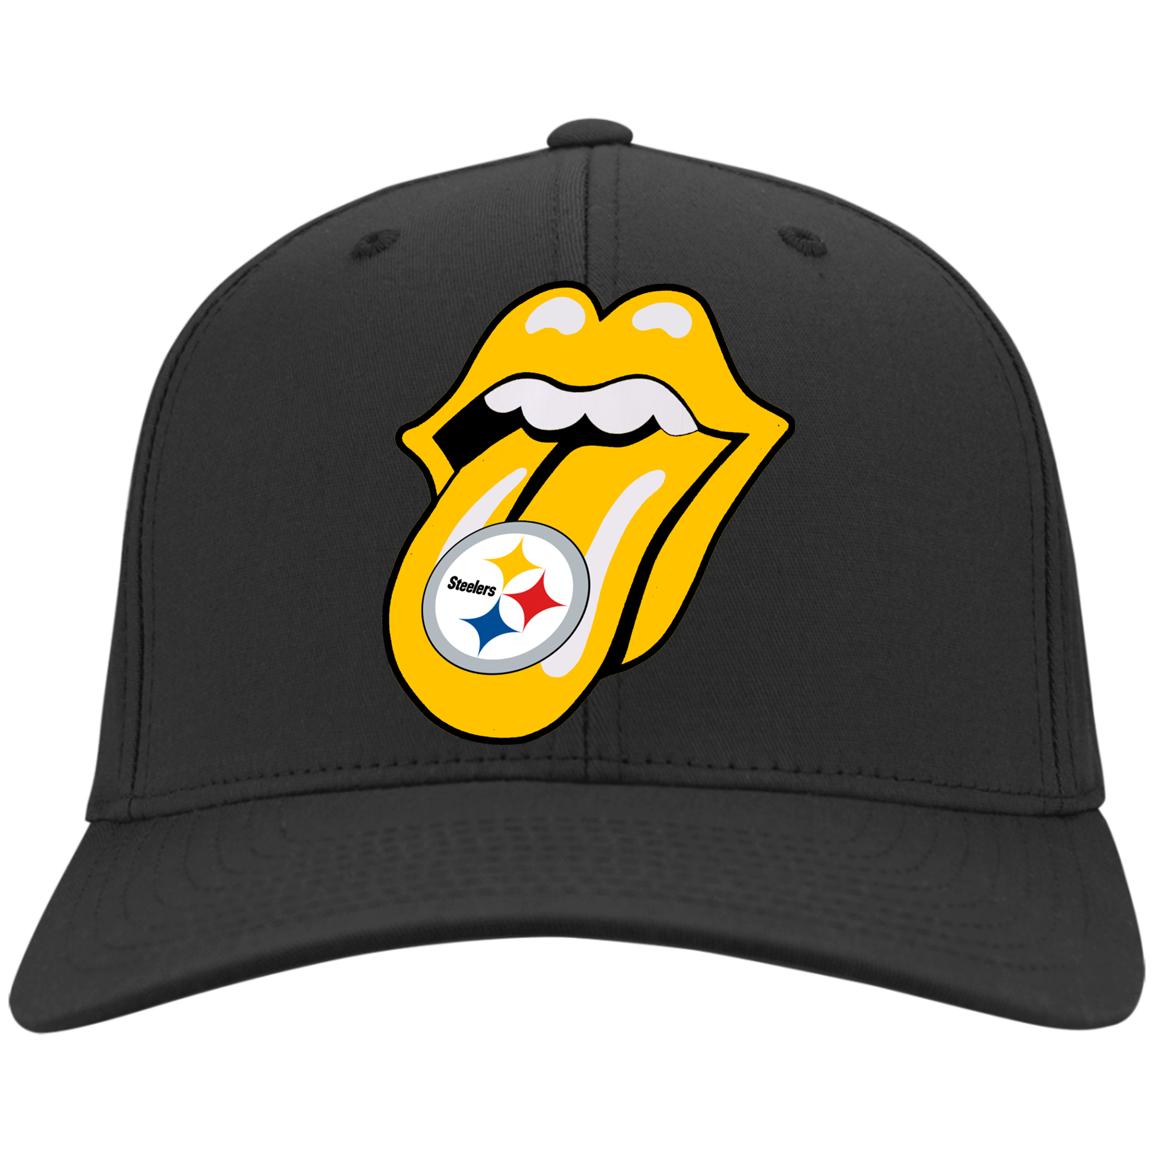 Steelers Football Fan Embroidery Cap